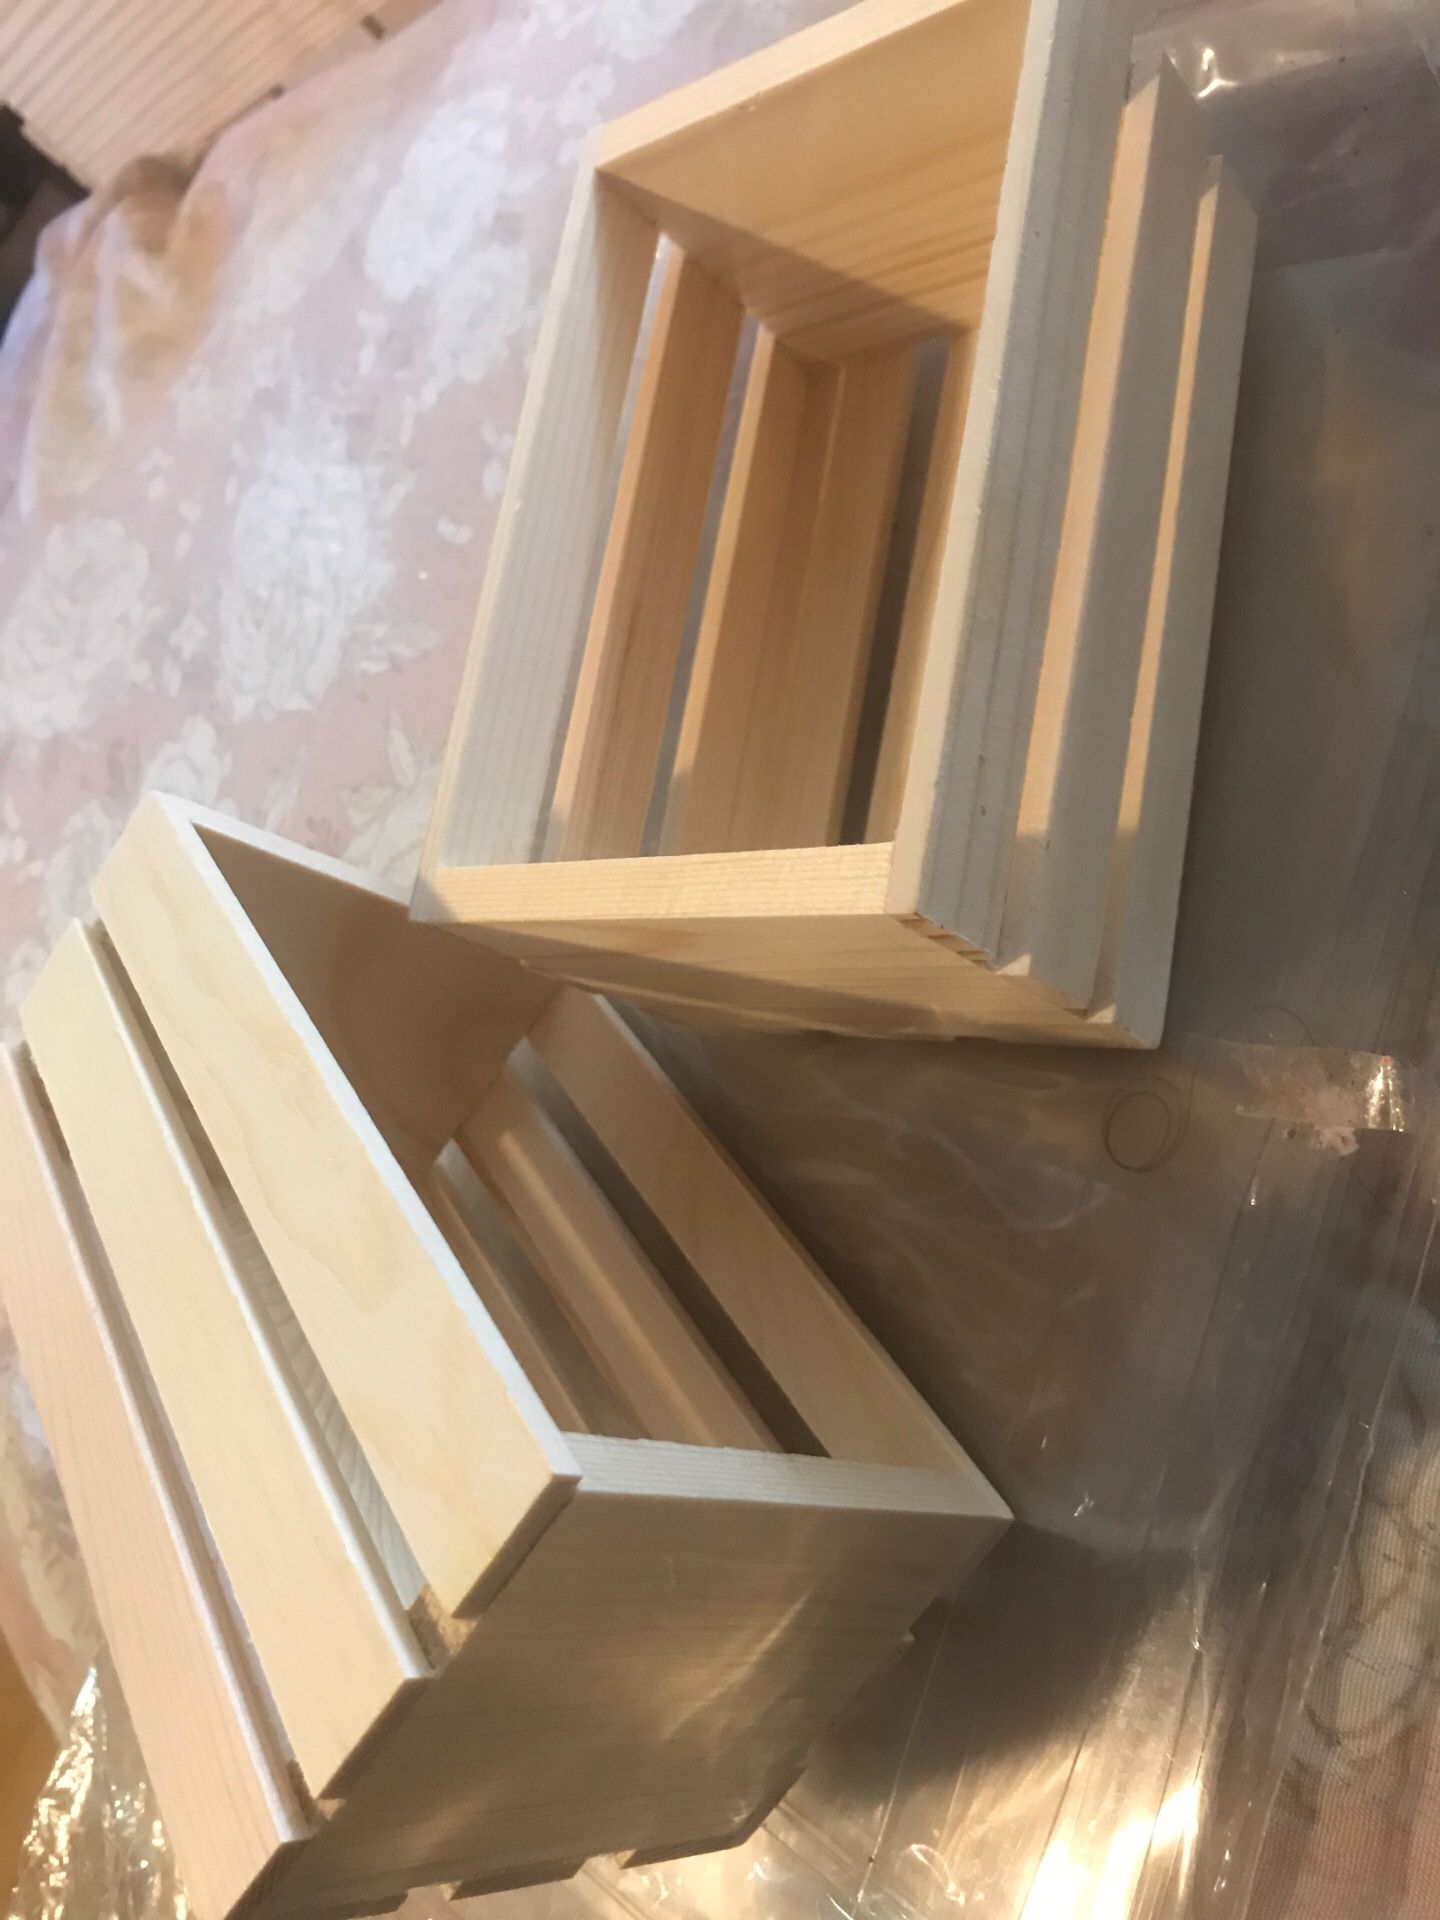 Mini wooden crates